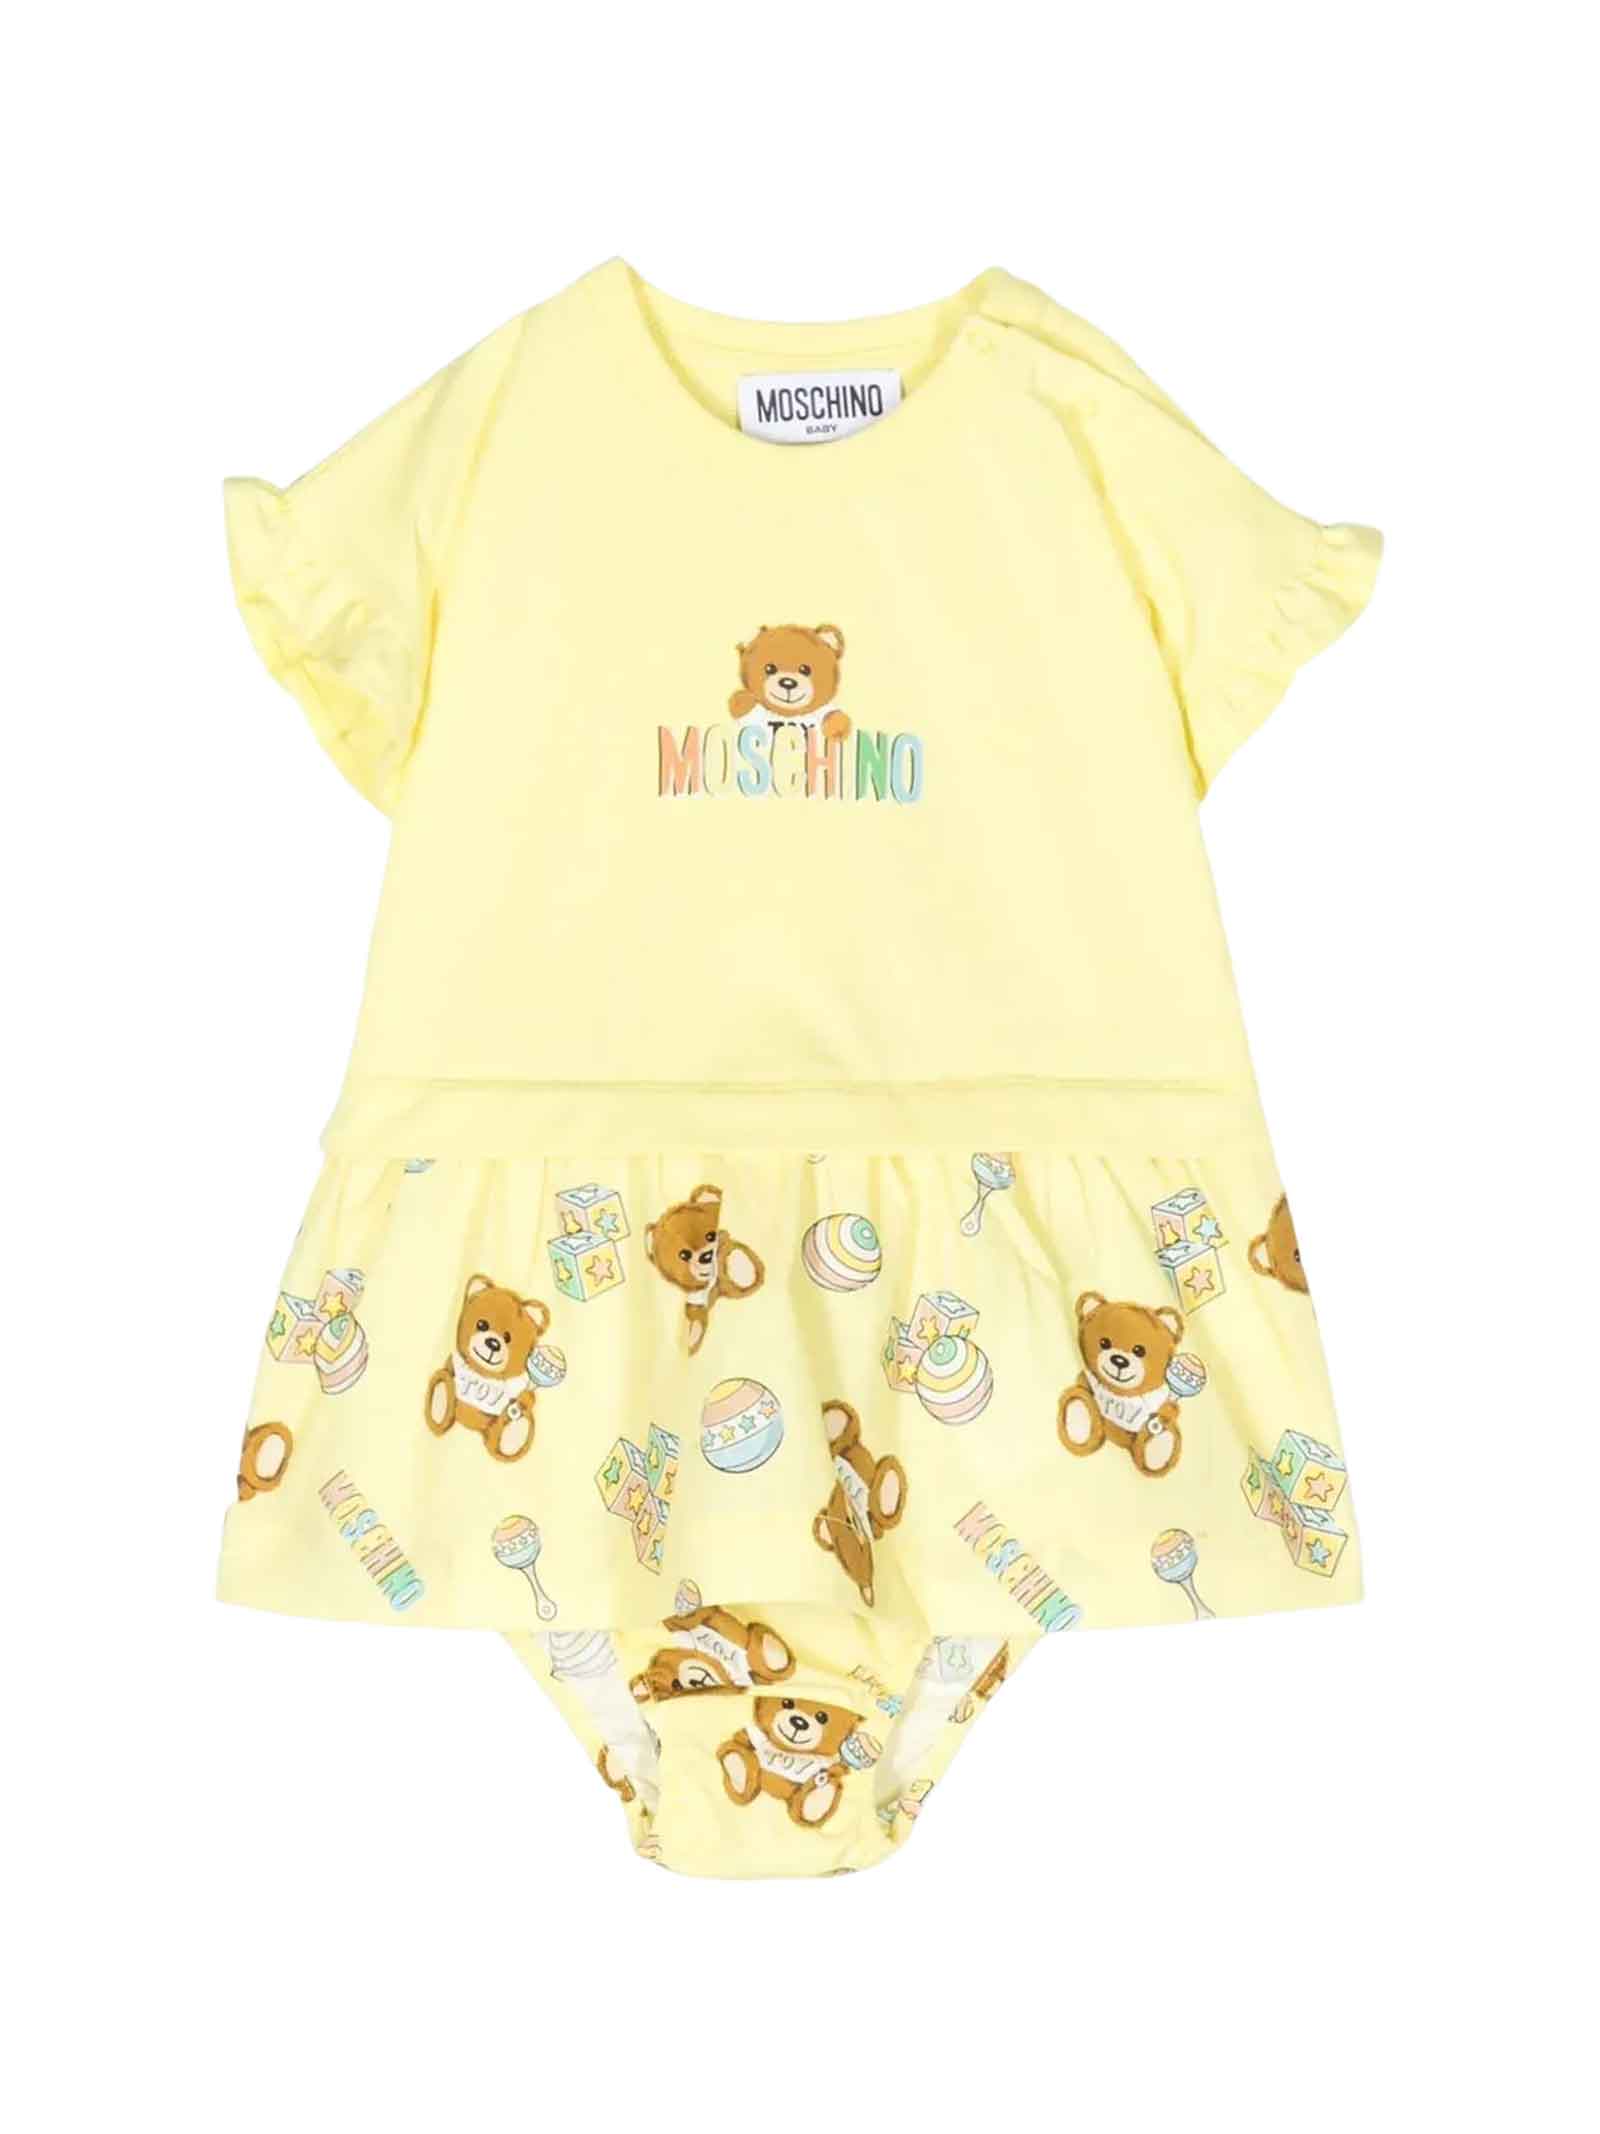 Moschino Yellow Dress Baby Girl